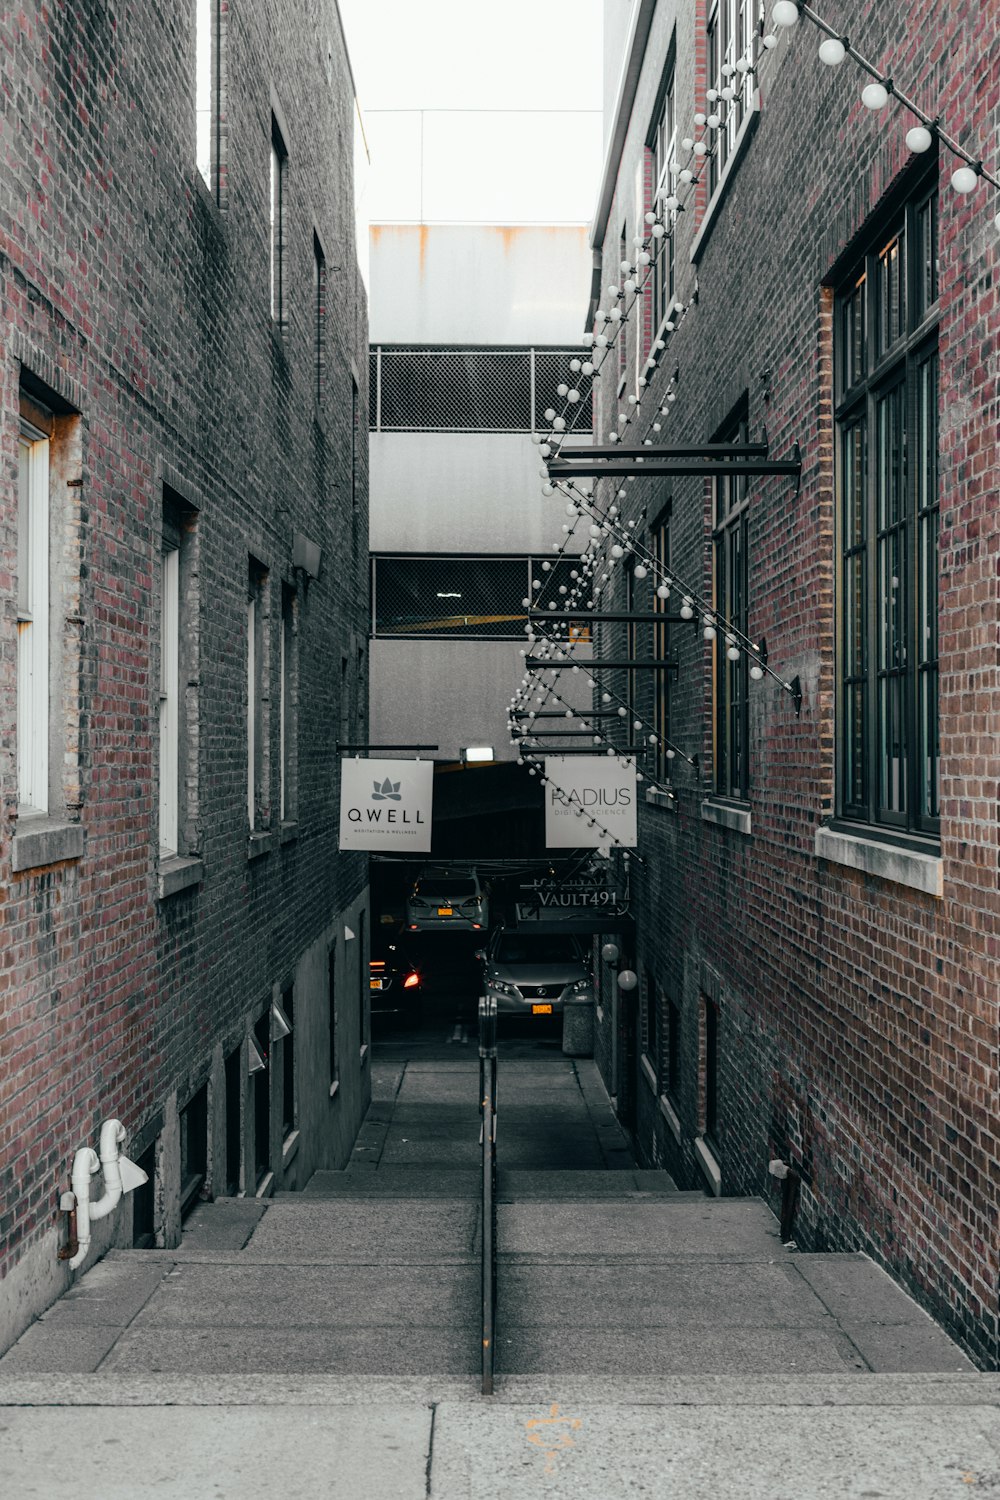 alley road between buildings